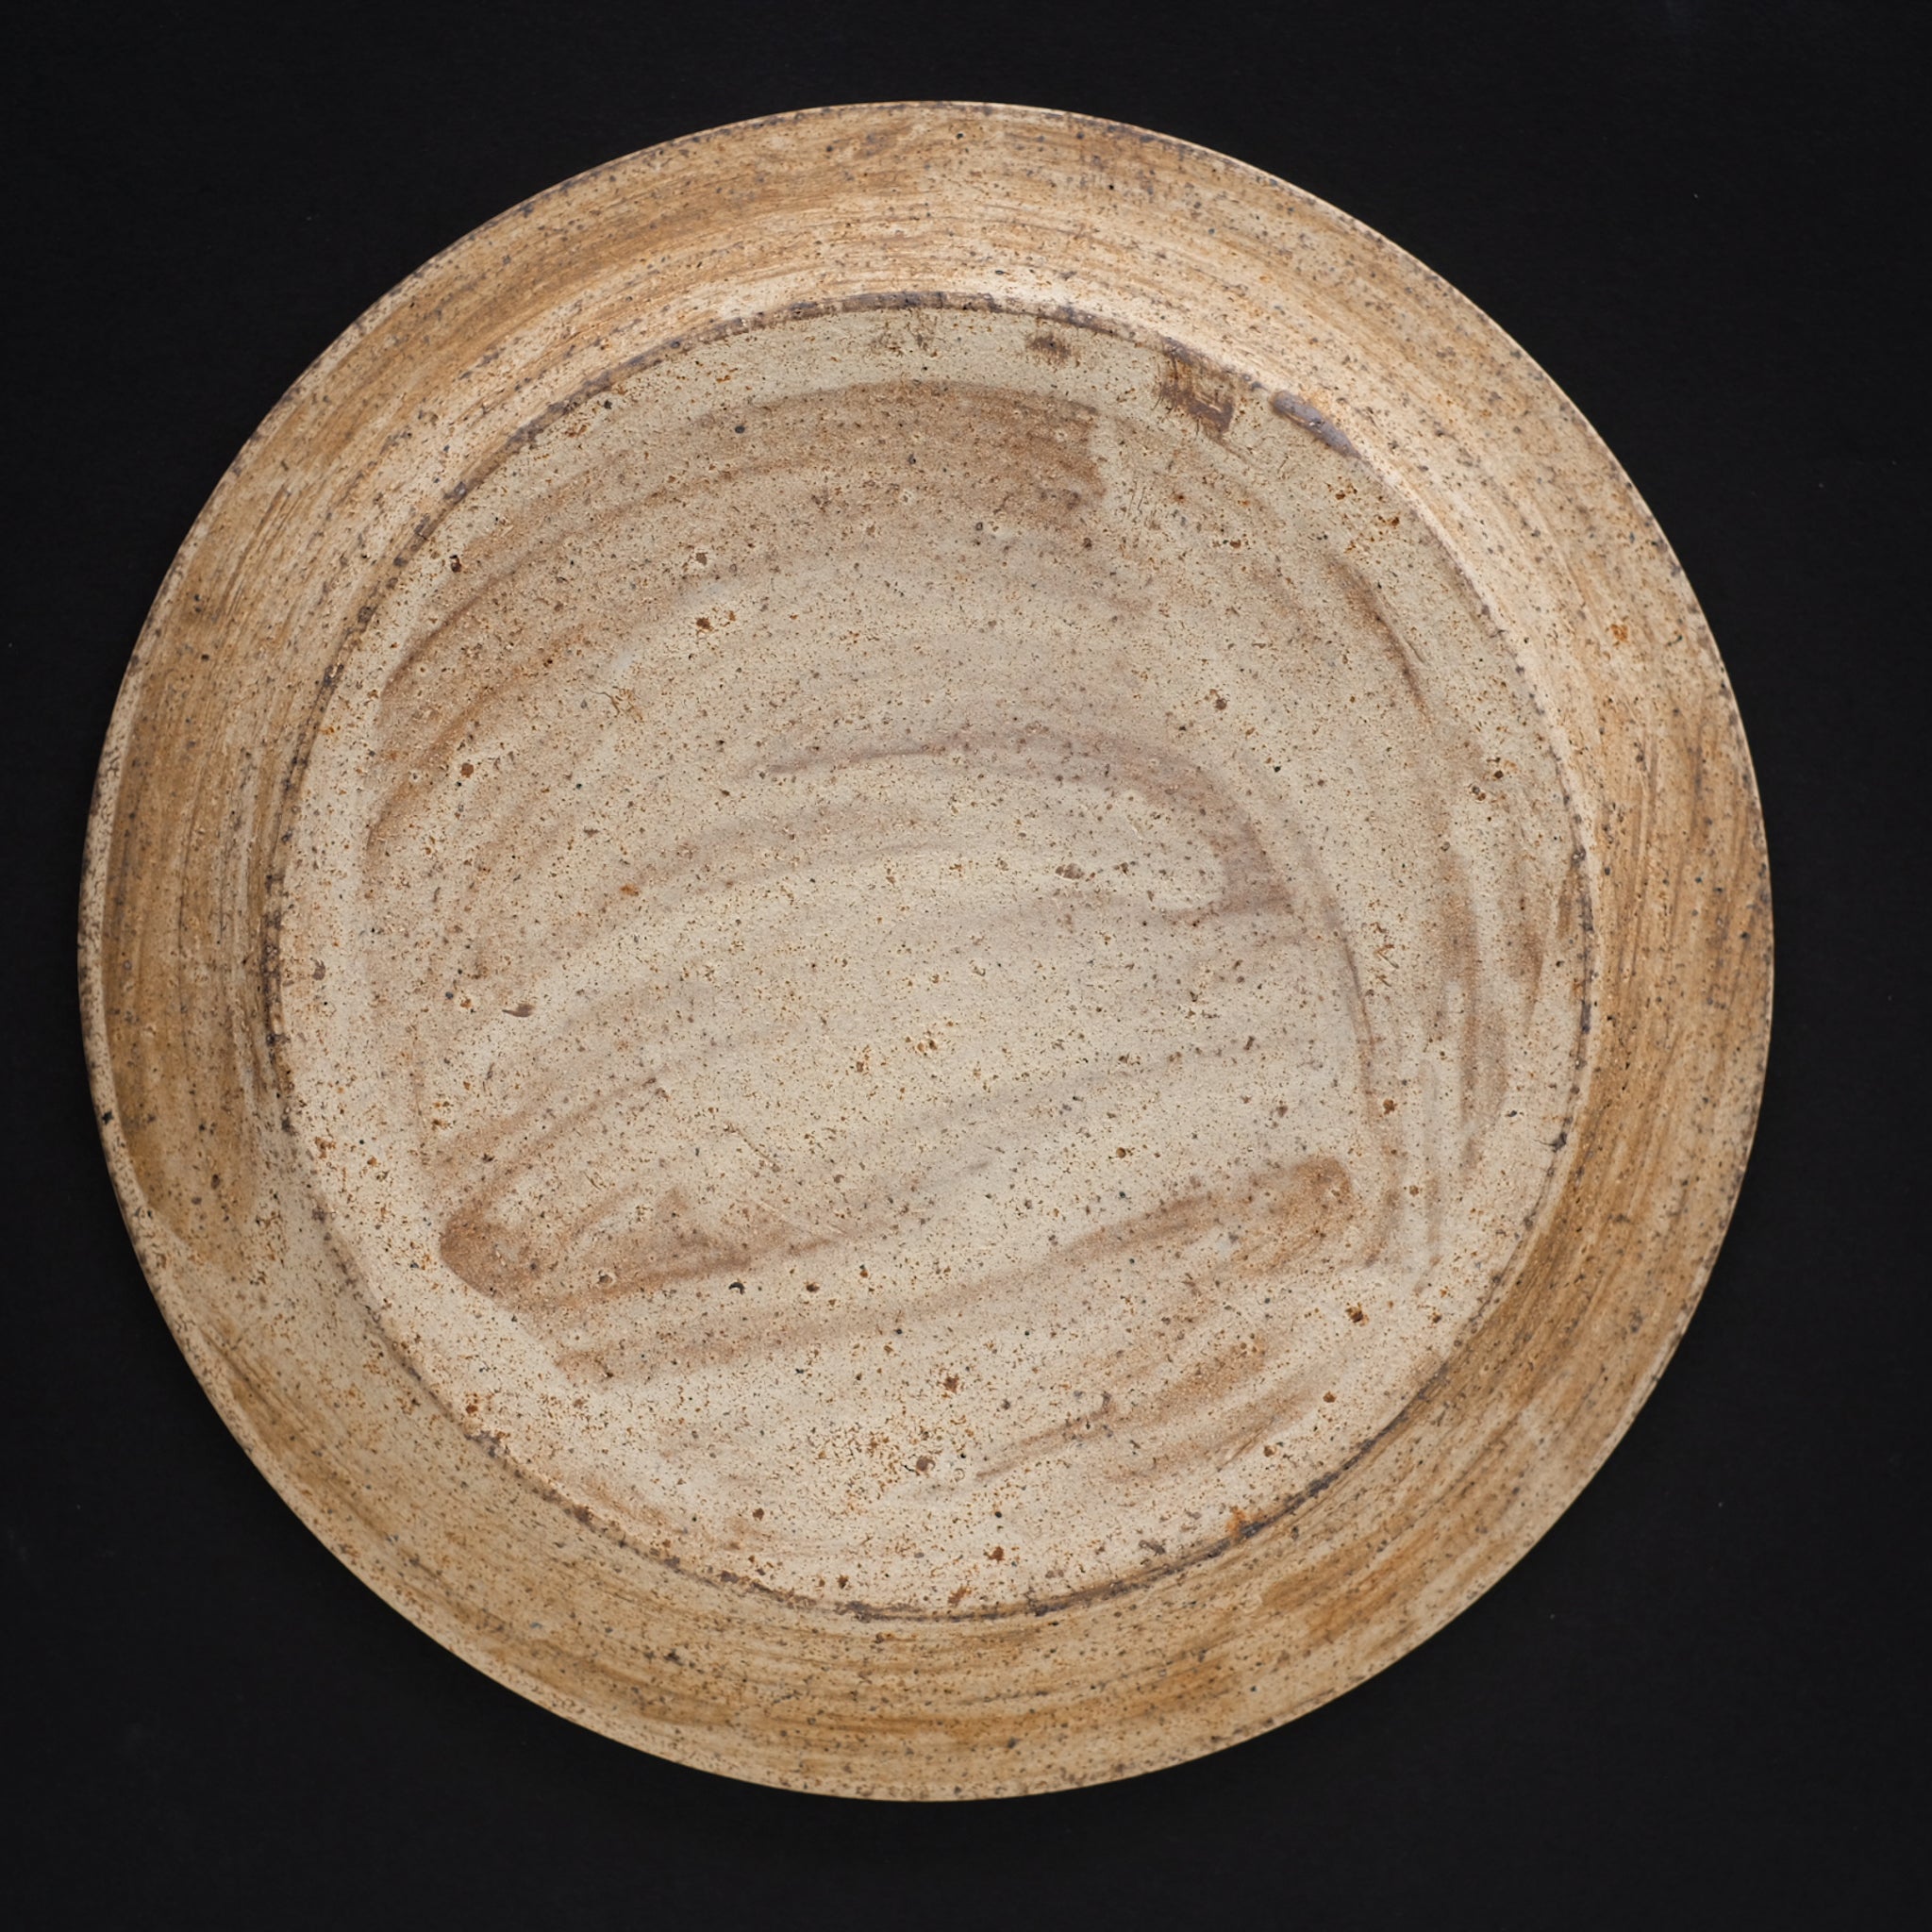 二階堂明弘  やきしめ丸皿 (φ22.8cm)    Akihiro Nikaido  Yakishime plate (φ22.8cm)